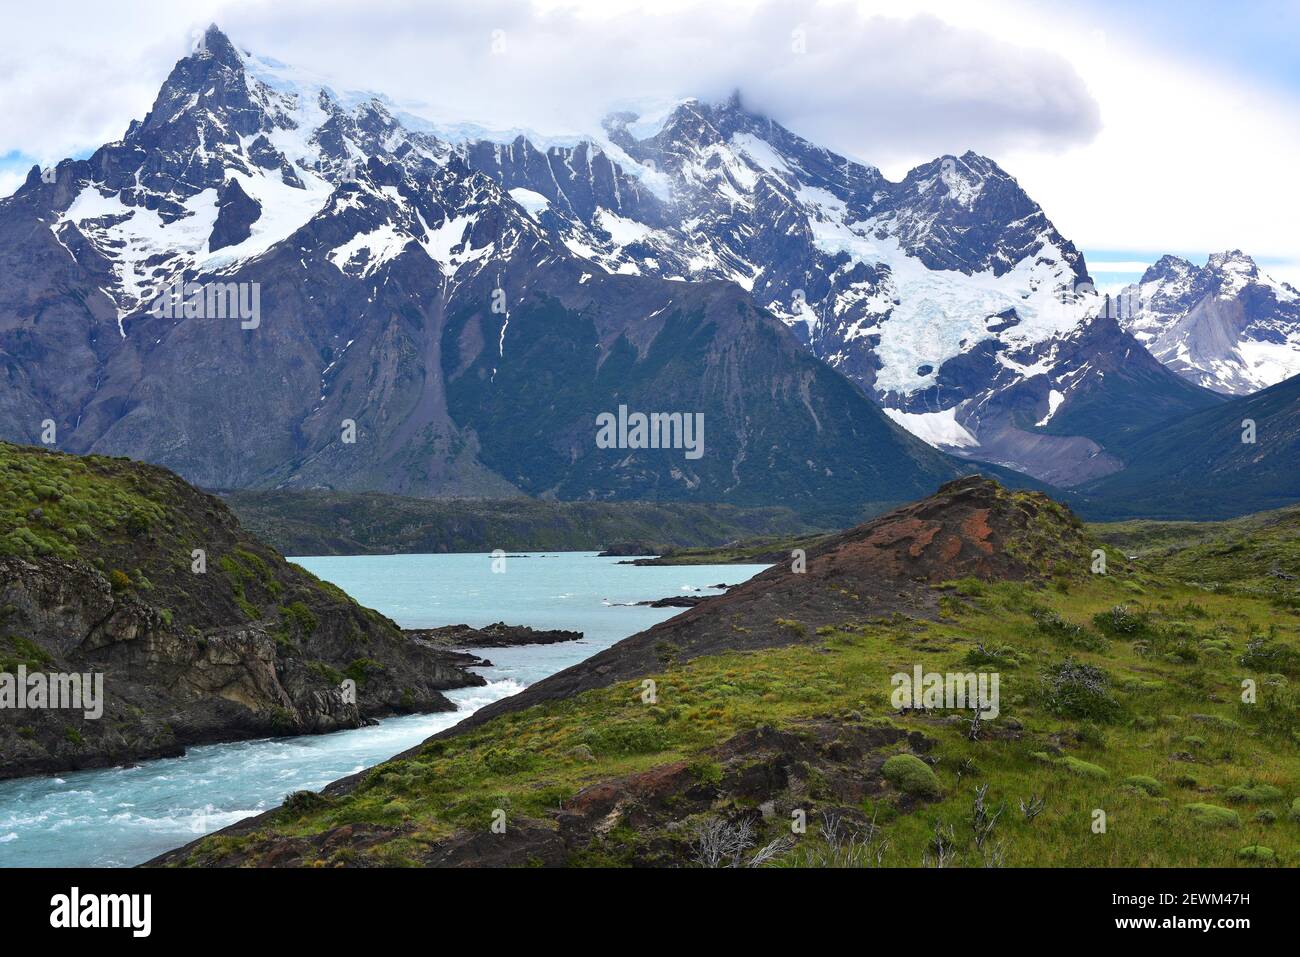 Parco Nazionale Torres del Paine. Ghiacciai e fiume Paine. Provincia de ultima speranza, Magallanes y Antartica Chilena. Foto Stock